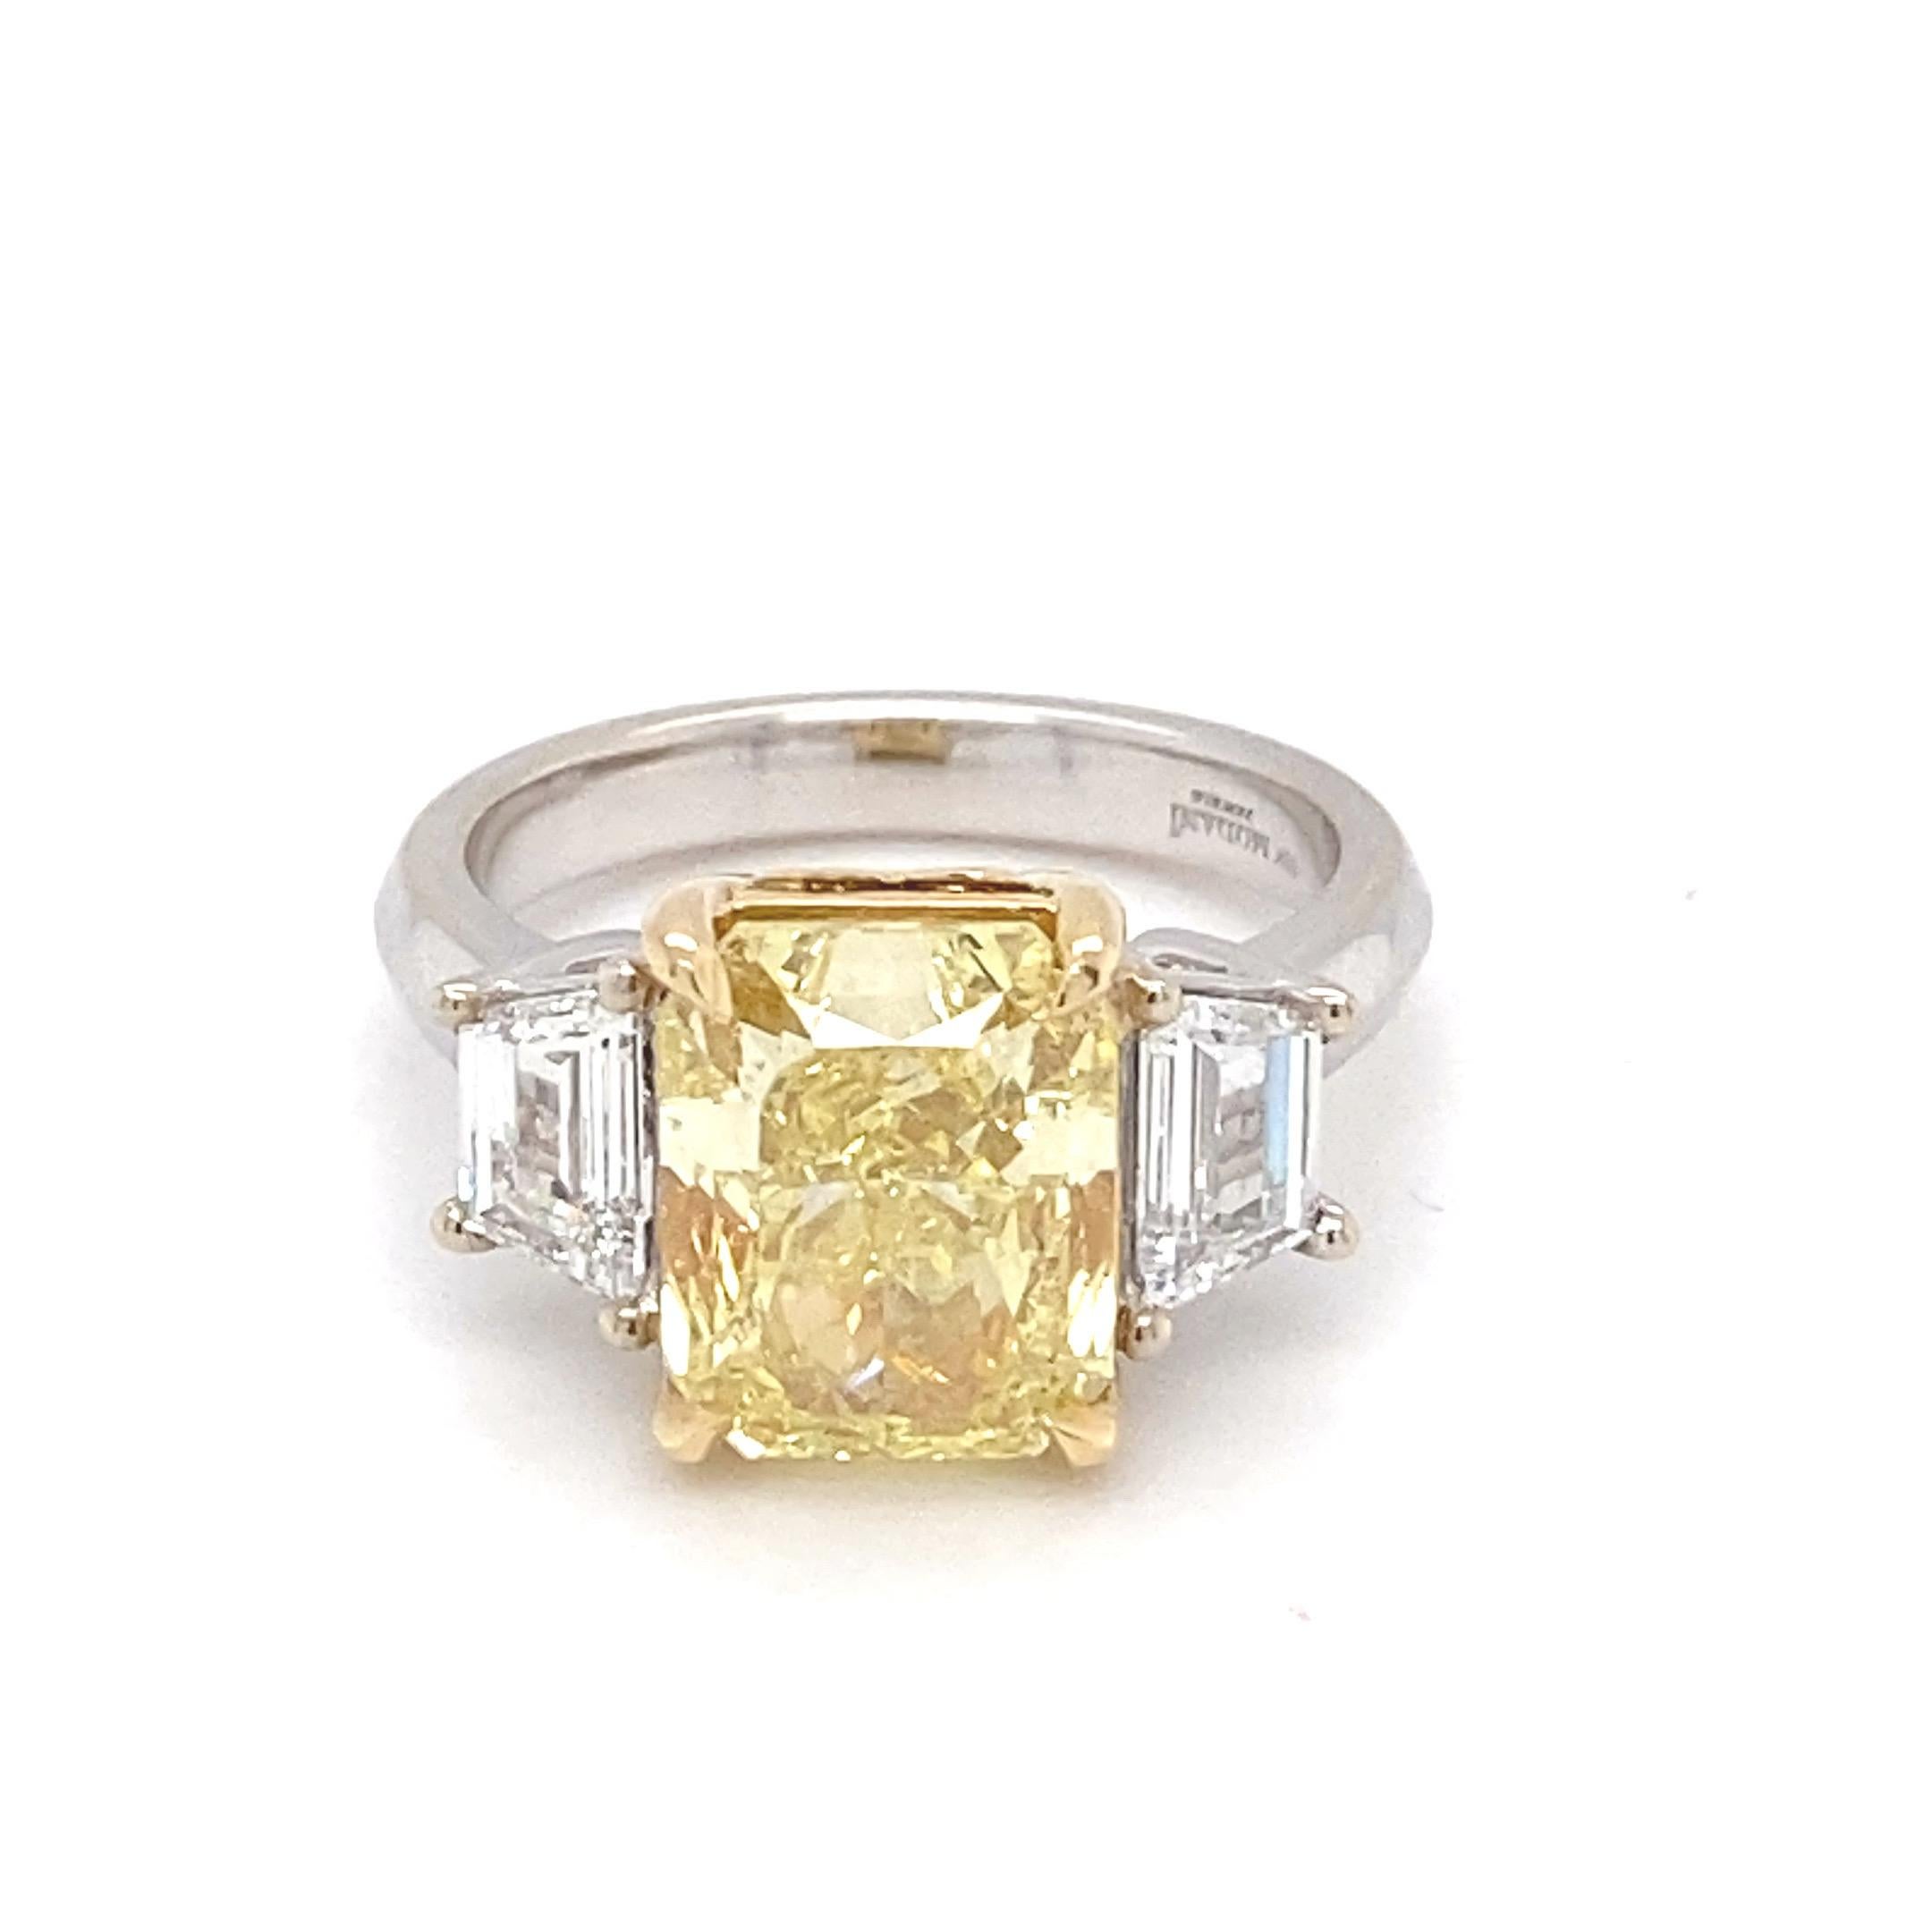 Cette magnifique bague est ornée d'un diamant coussin Intense Fancy Yellow de 5,01 carats certifié par la GIA comme pierre centrale et de deux diamants blancs trapézoïdaux comme pierres latérales. La pierre centrale est montée en or jaune tandis que